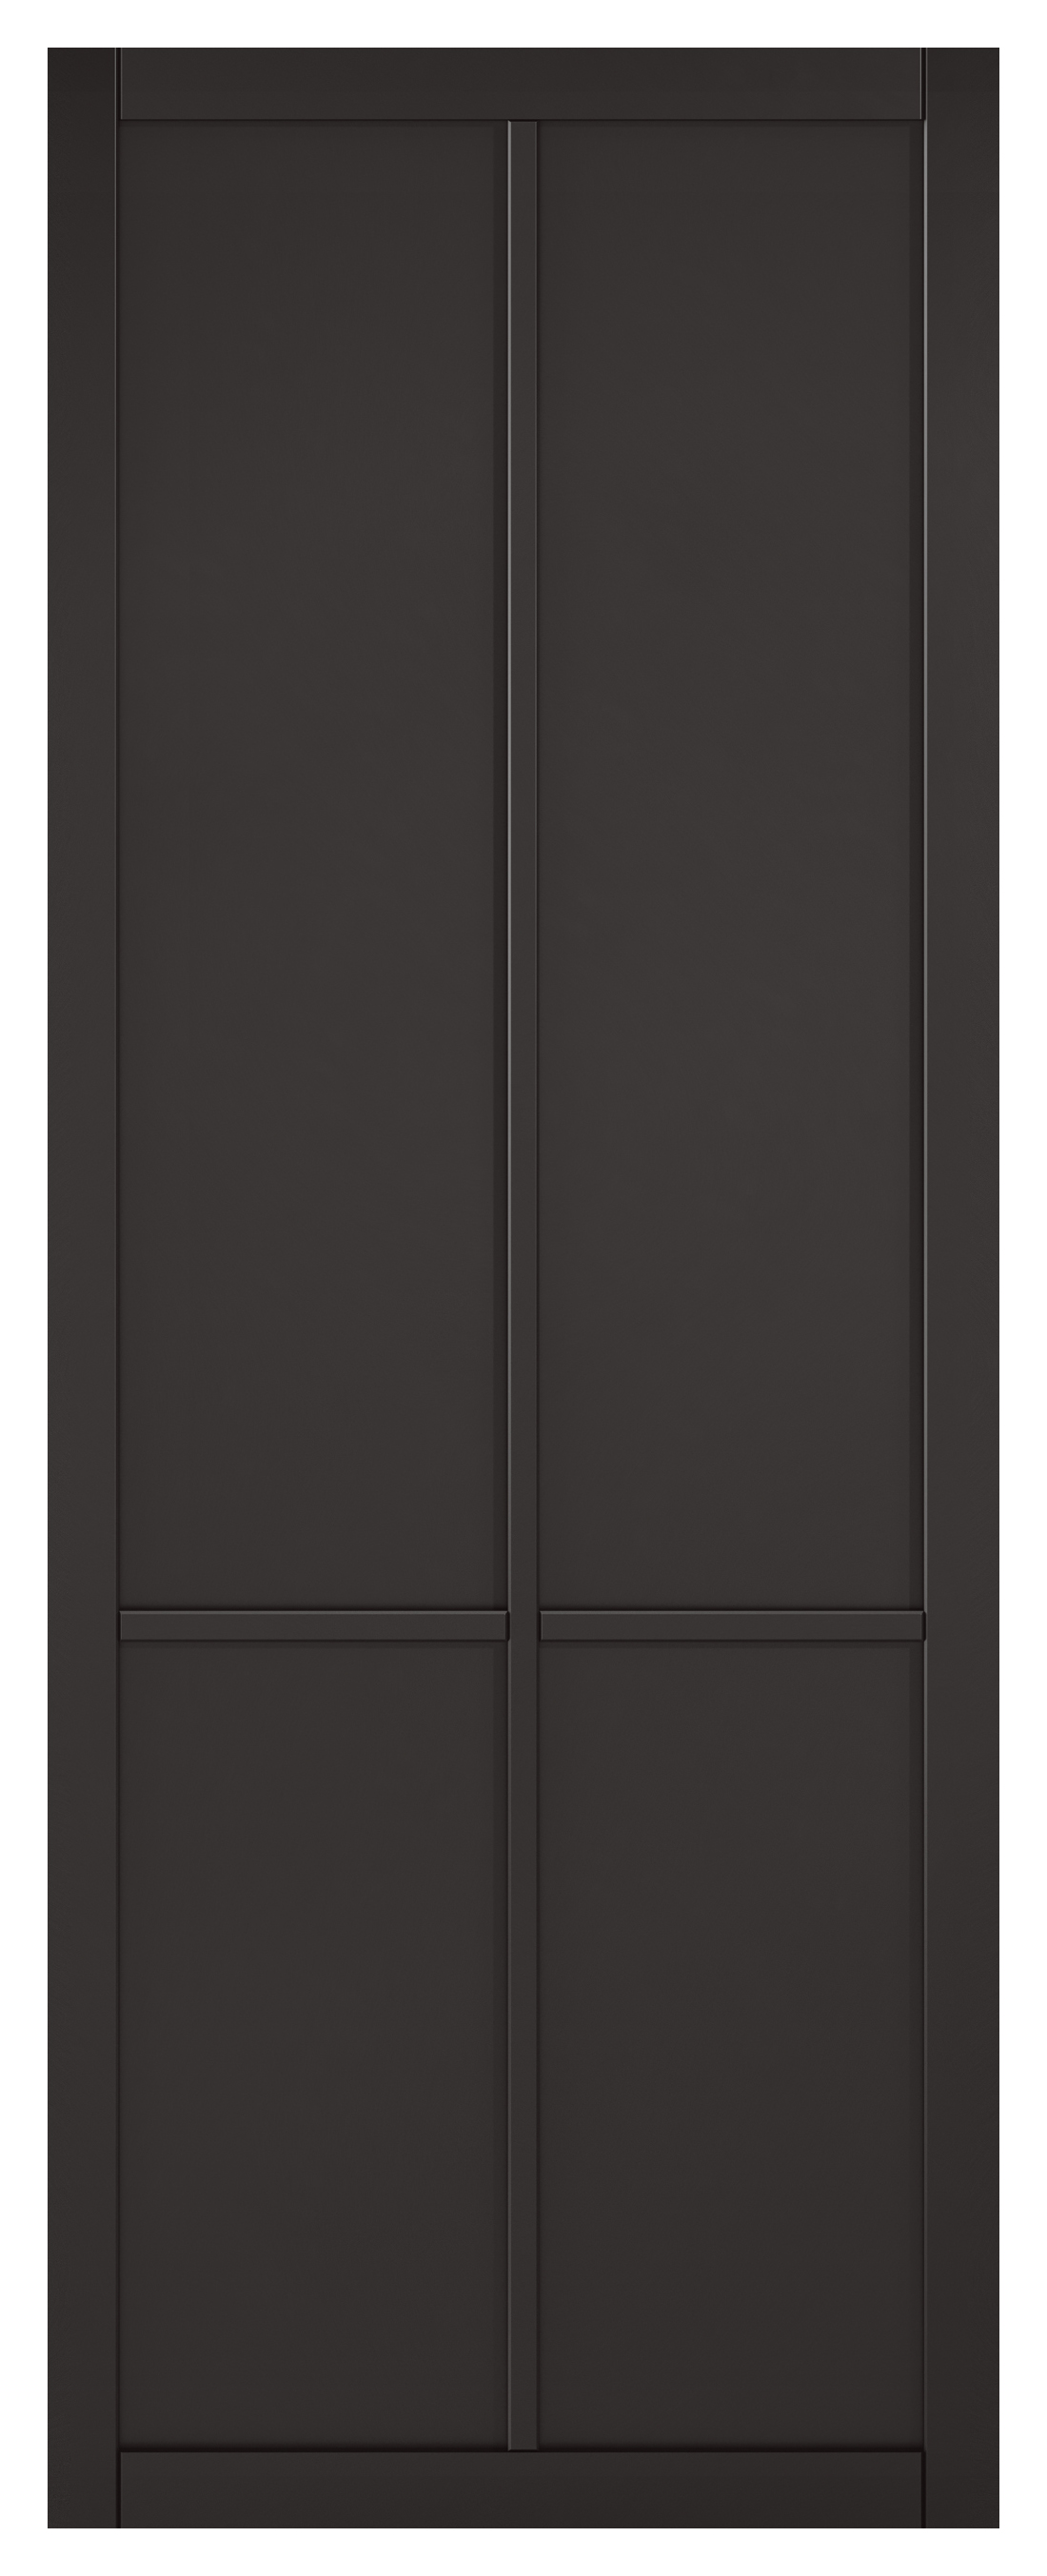 Image of LPD Internal Liberty 4 Panel Primed Black Solid Core Door - 686 x 1981mm